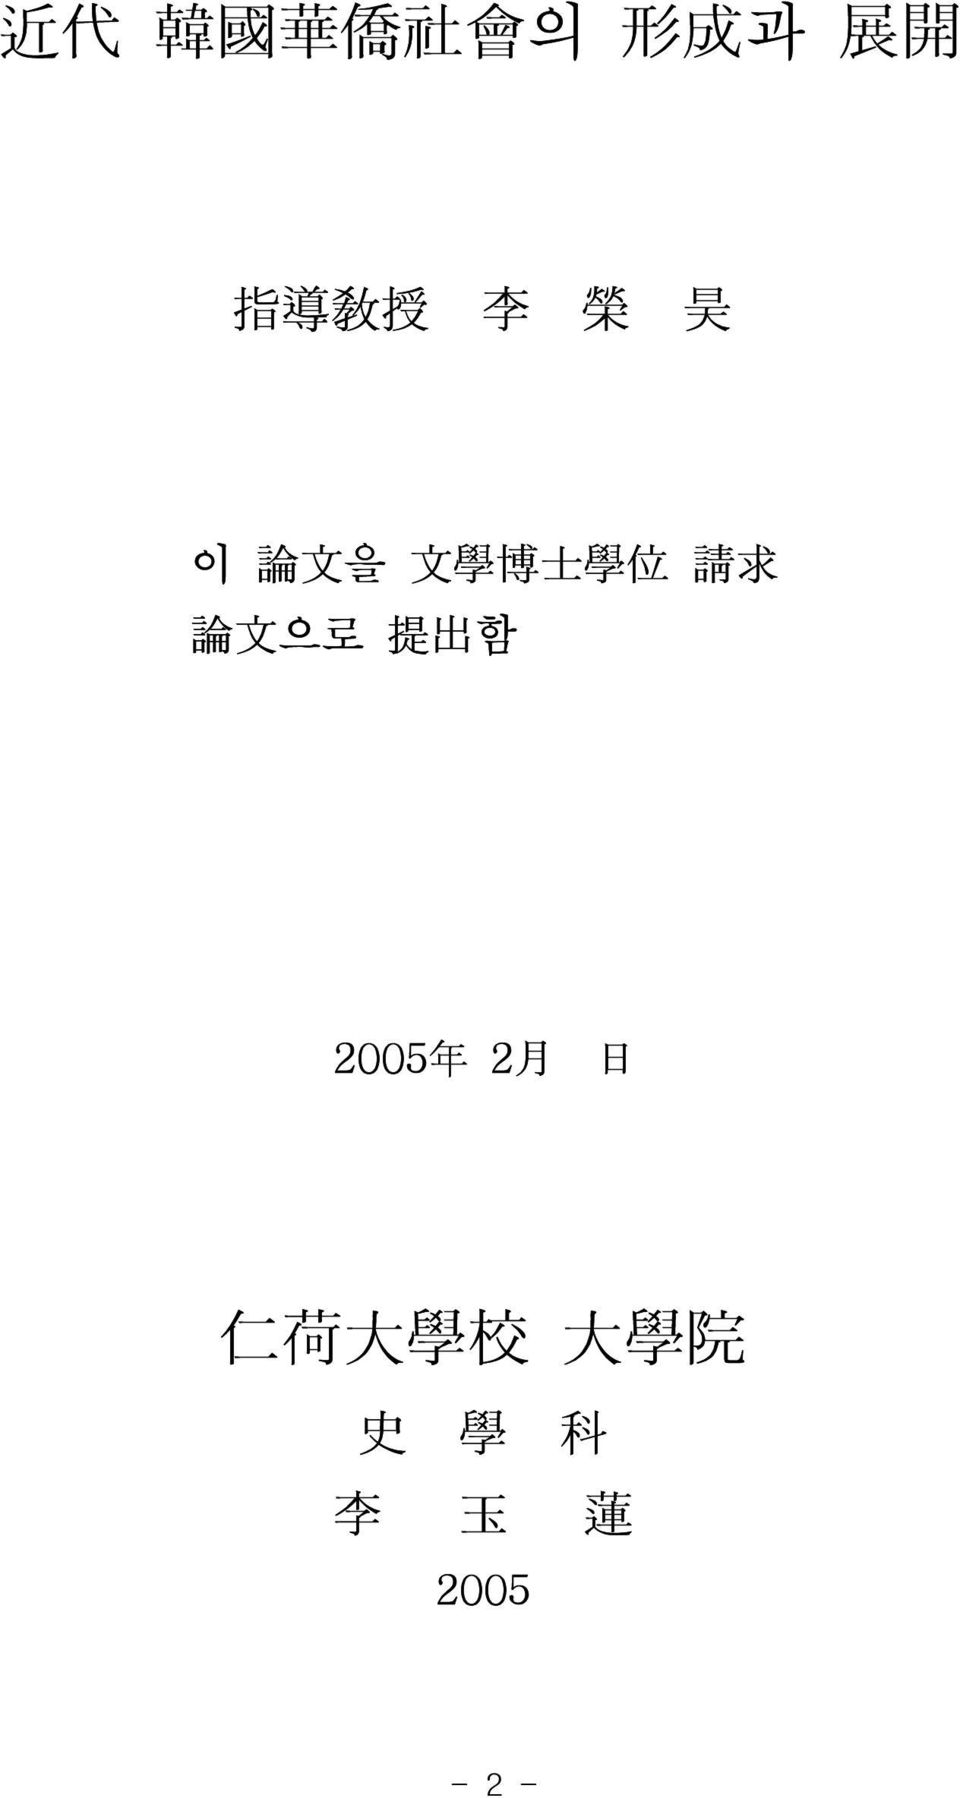 求 論 文 으로 提 出 함 2005 年 2 月 日 仁 荷